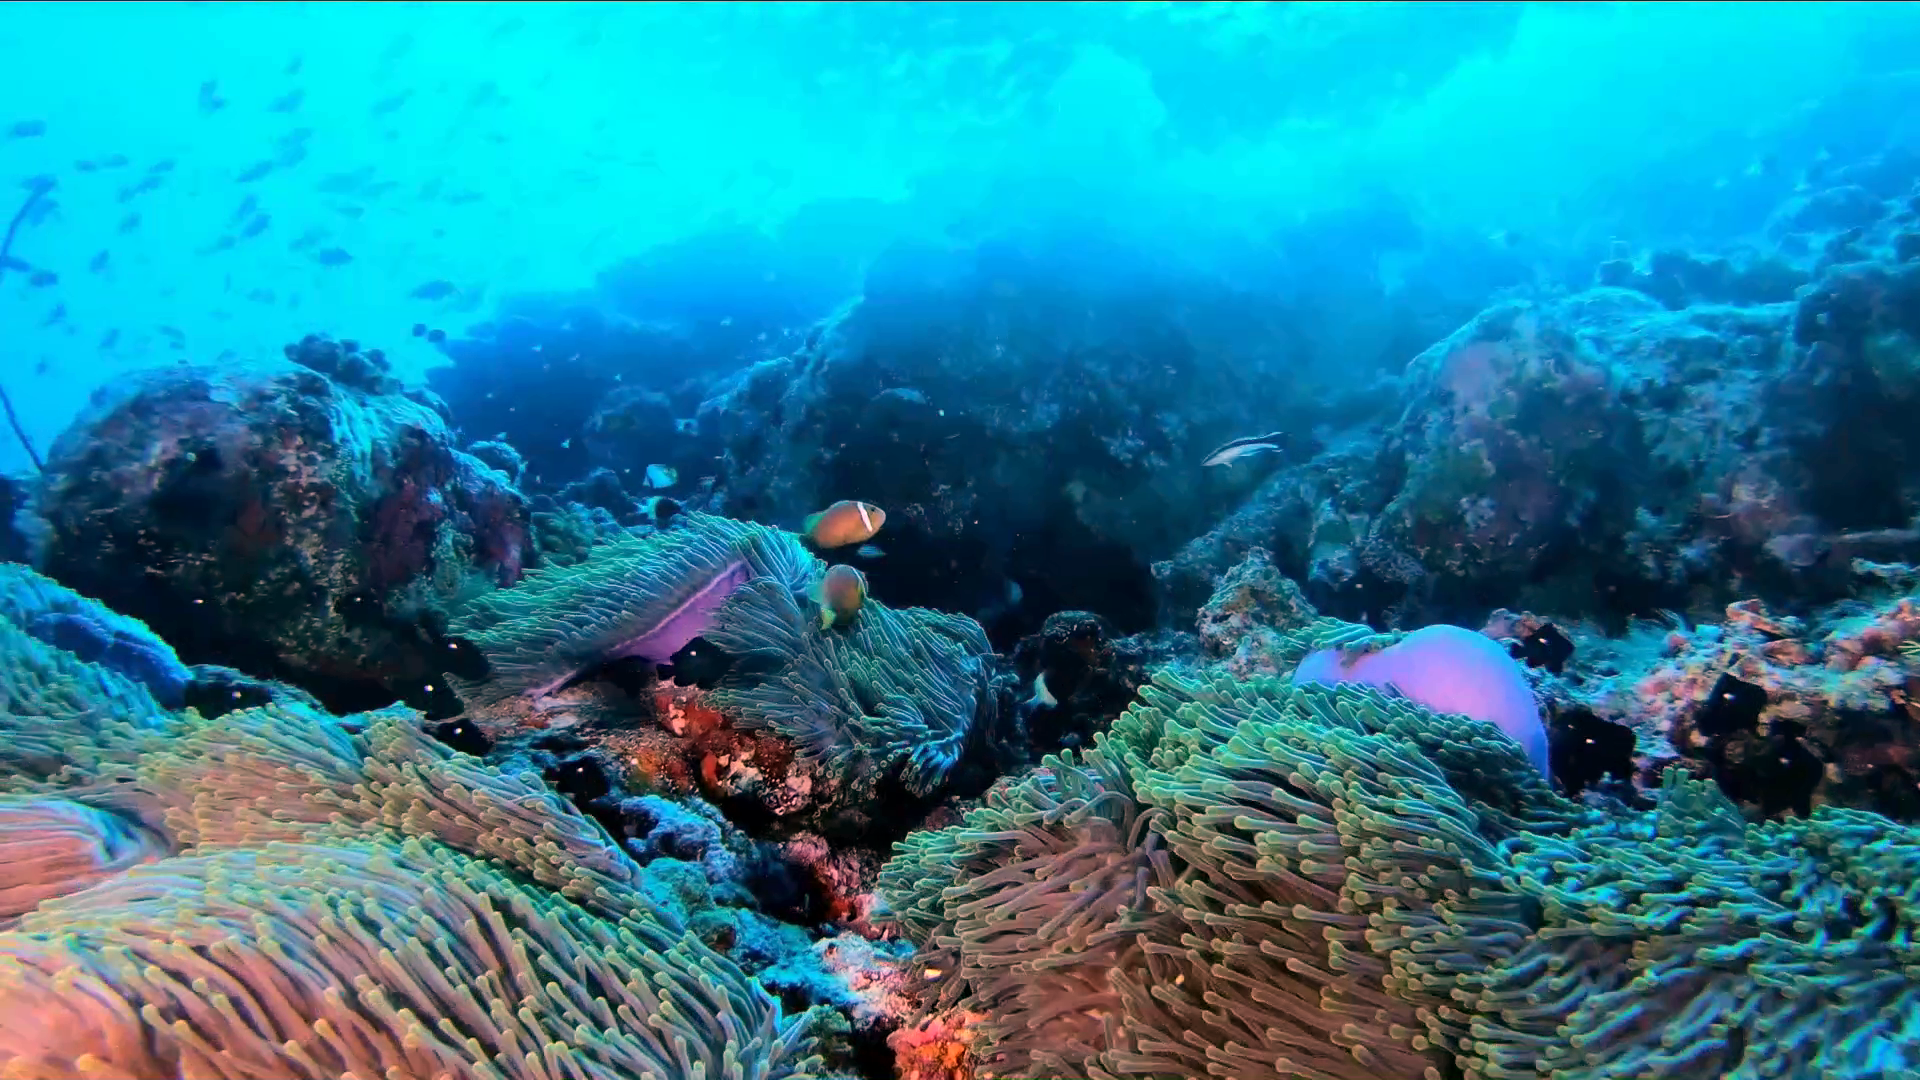 Pesce Pagliaccio delle Maldive - Amphiprion nigripes - Maldive Anemonefish - blackfinned Anemonefish - www.intotheblue.it